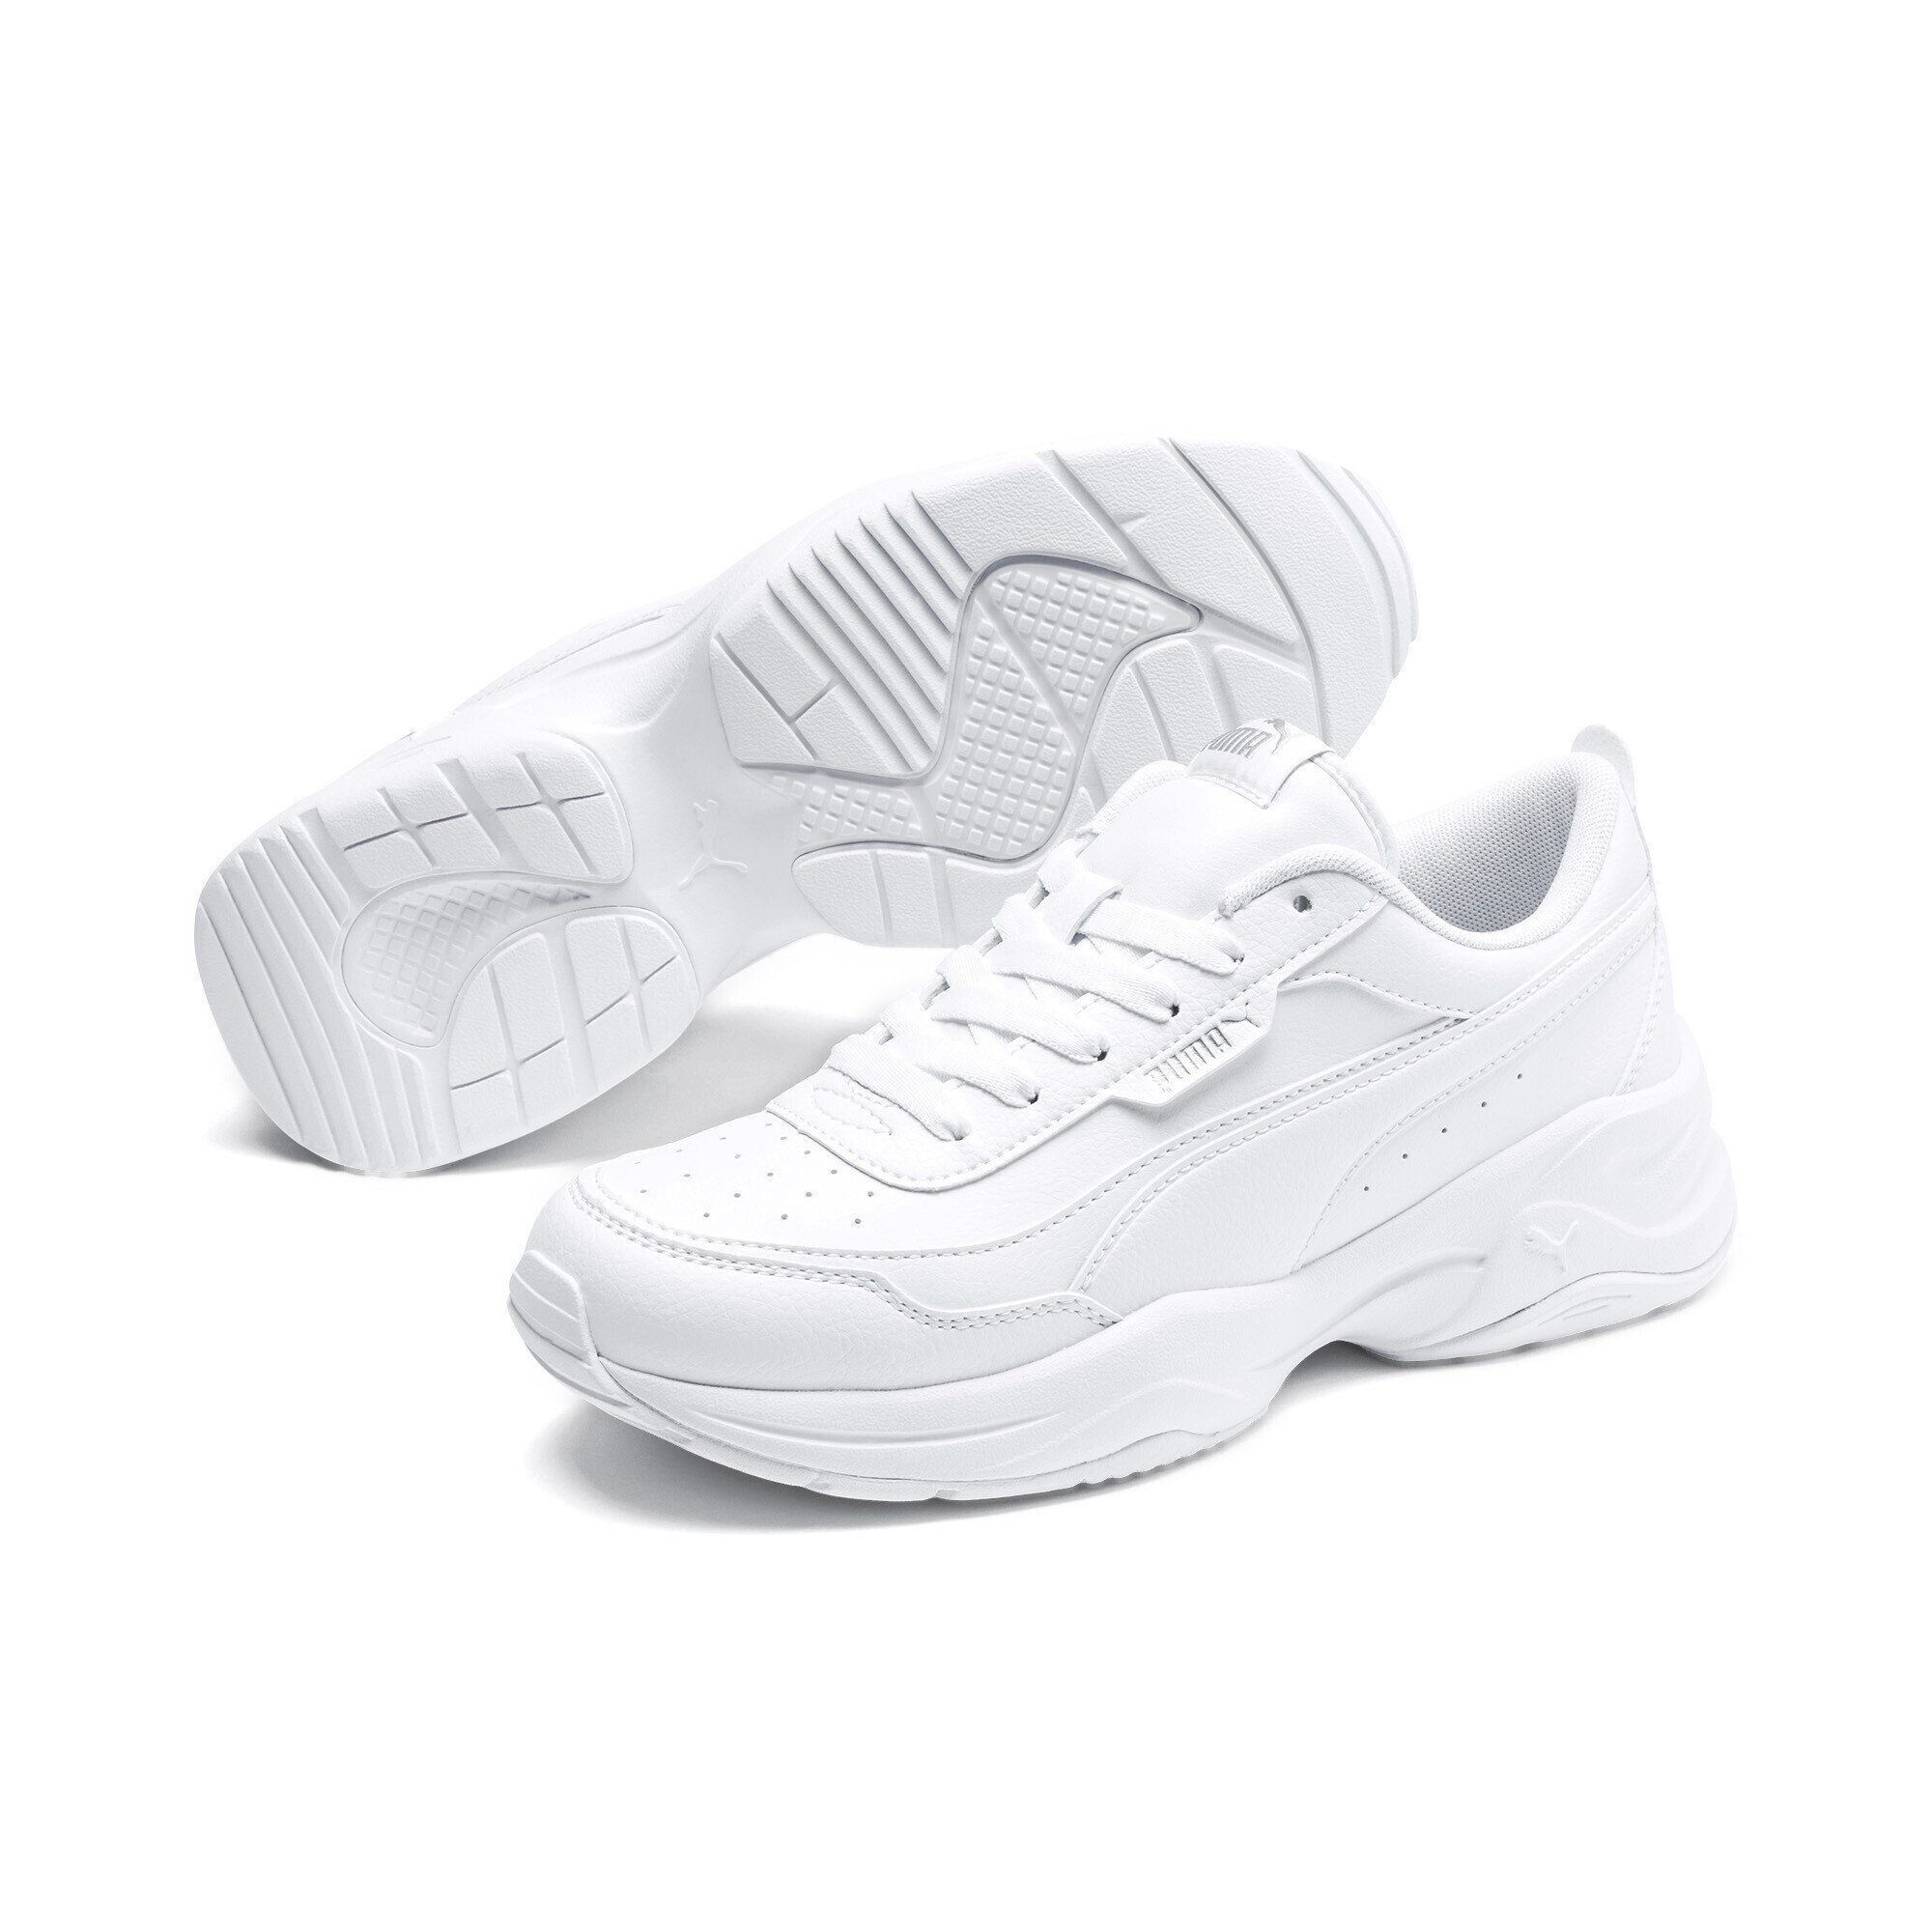 PUMA Cilia Mode Sneakers Damen Laufschuh White Silver Gray